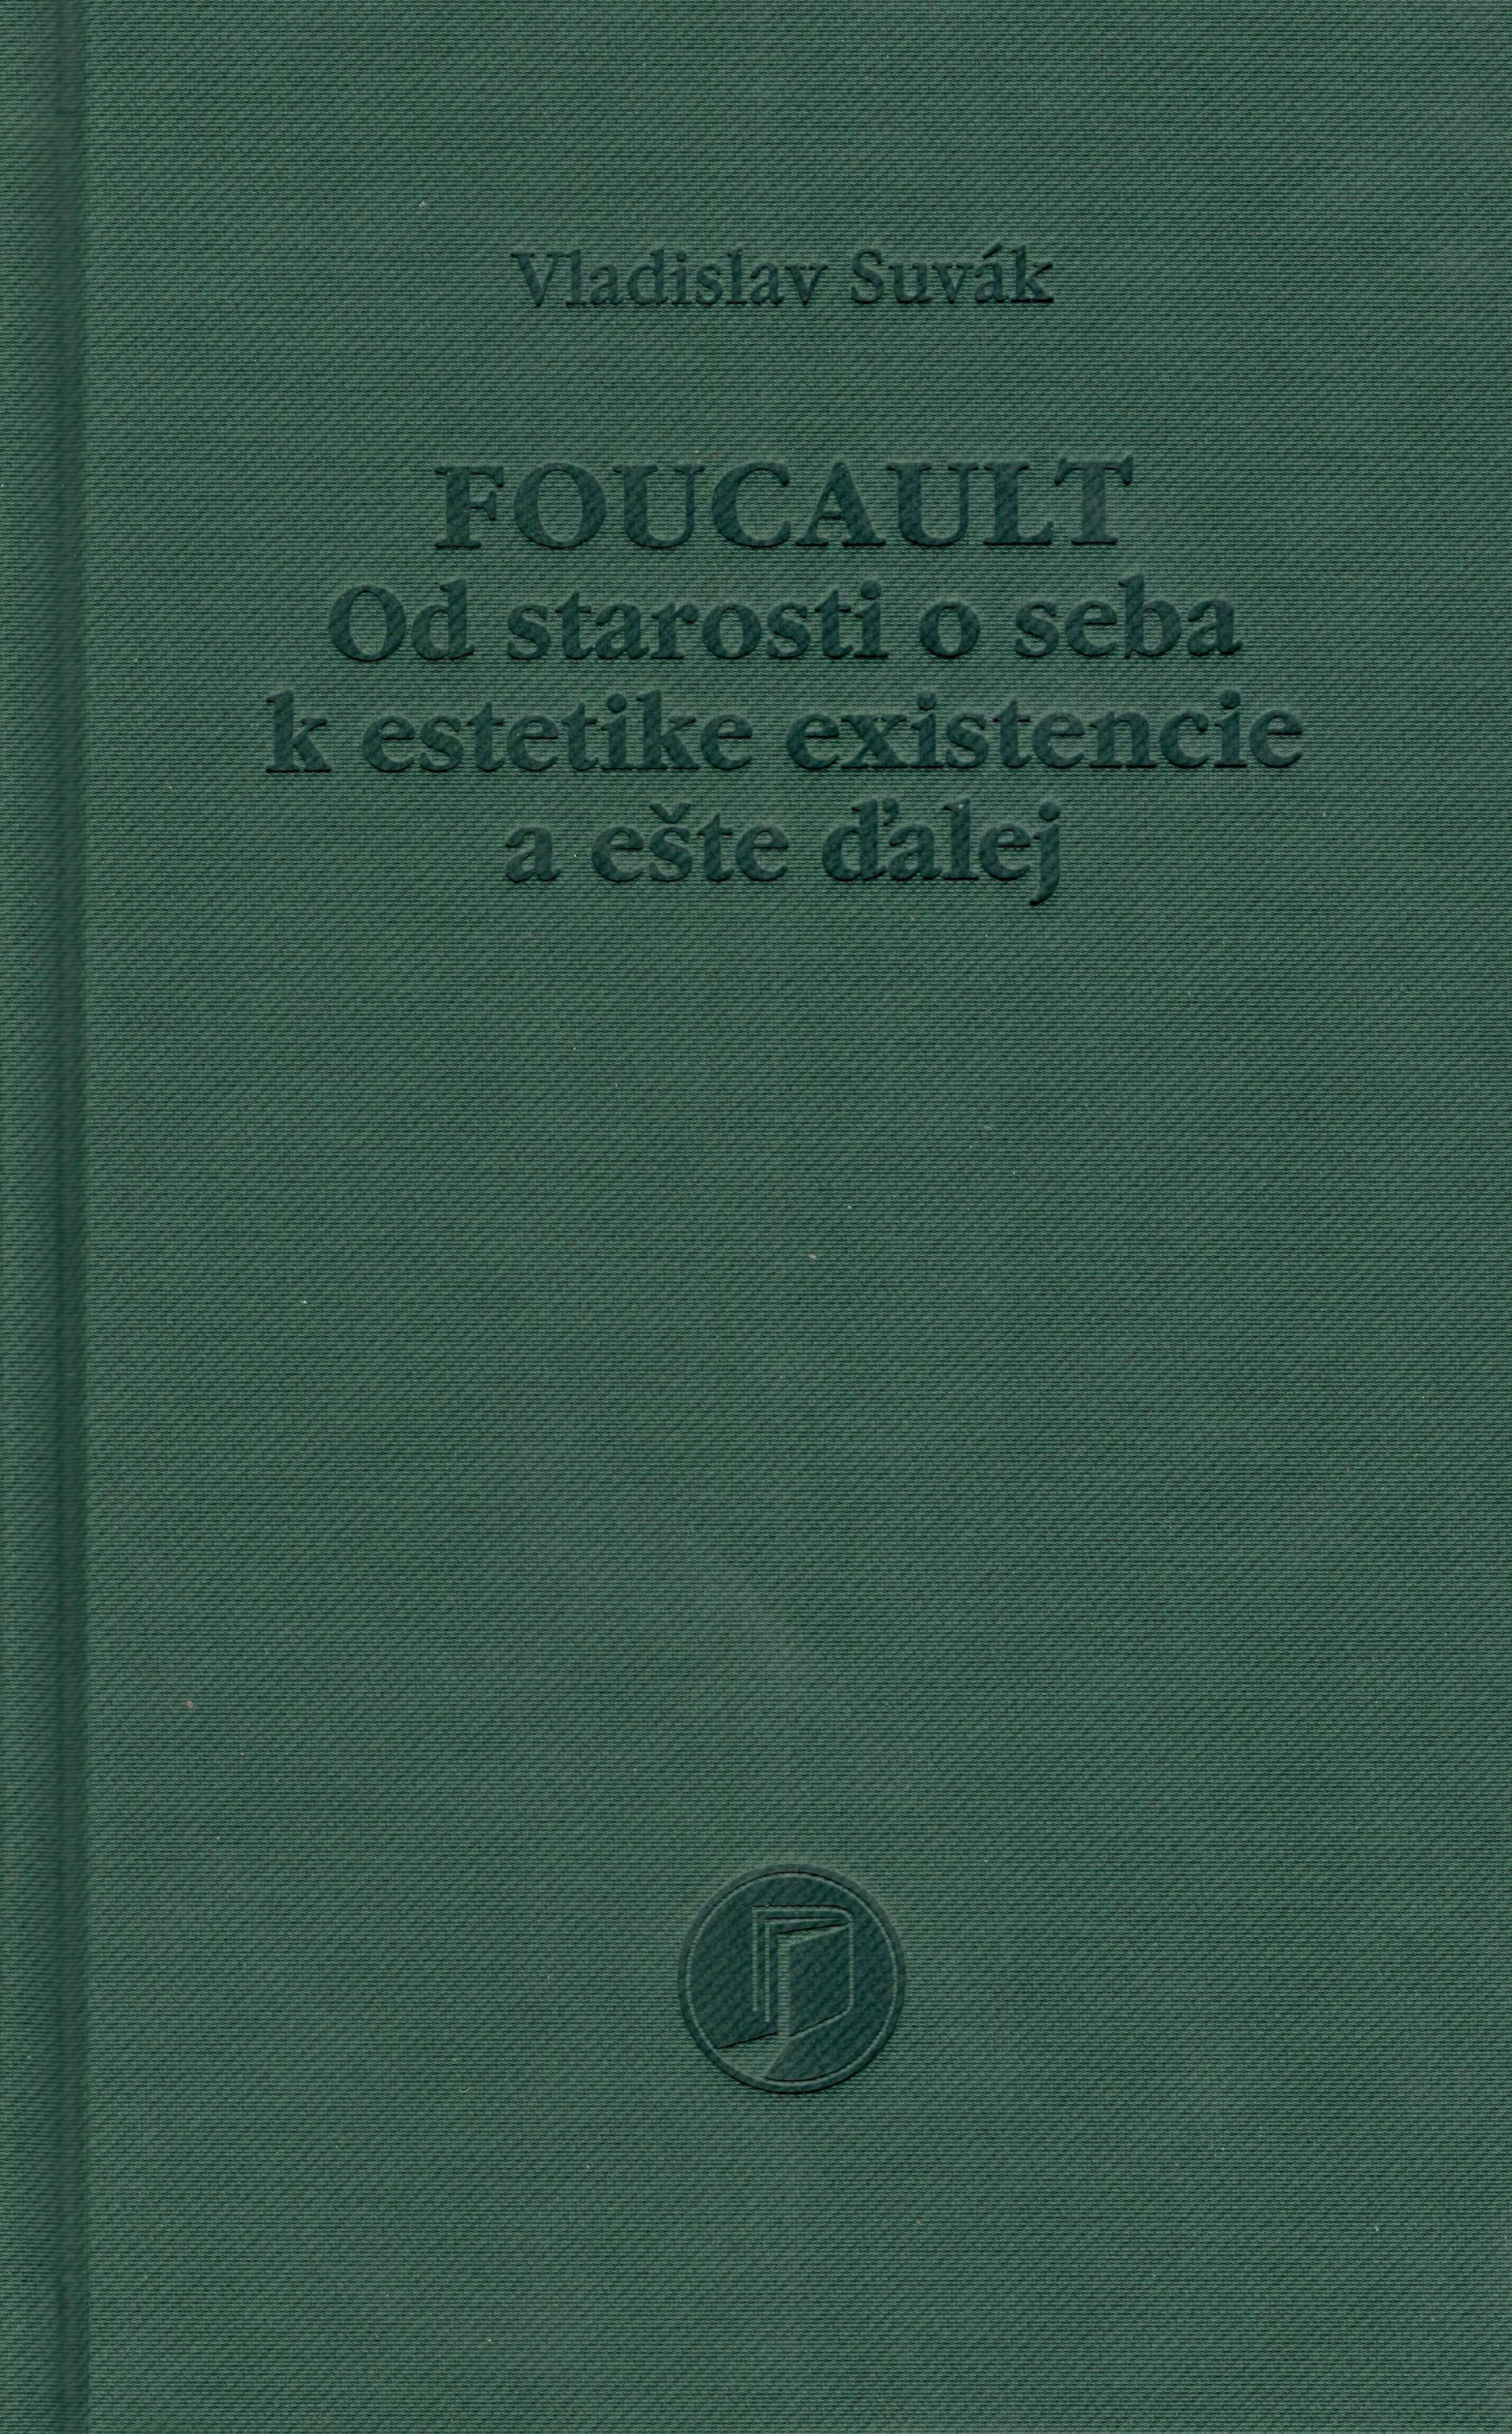 Foucault. Od starosti o seba k estetike existencie a ešte ďalej